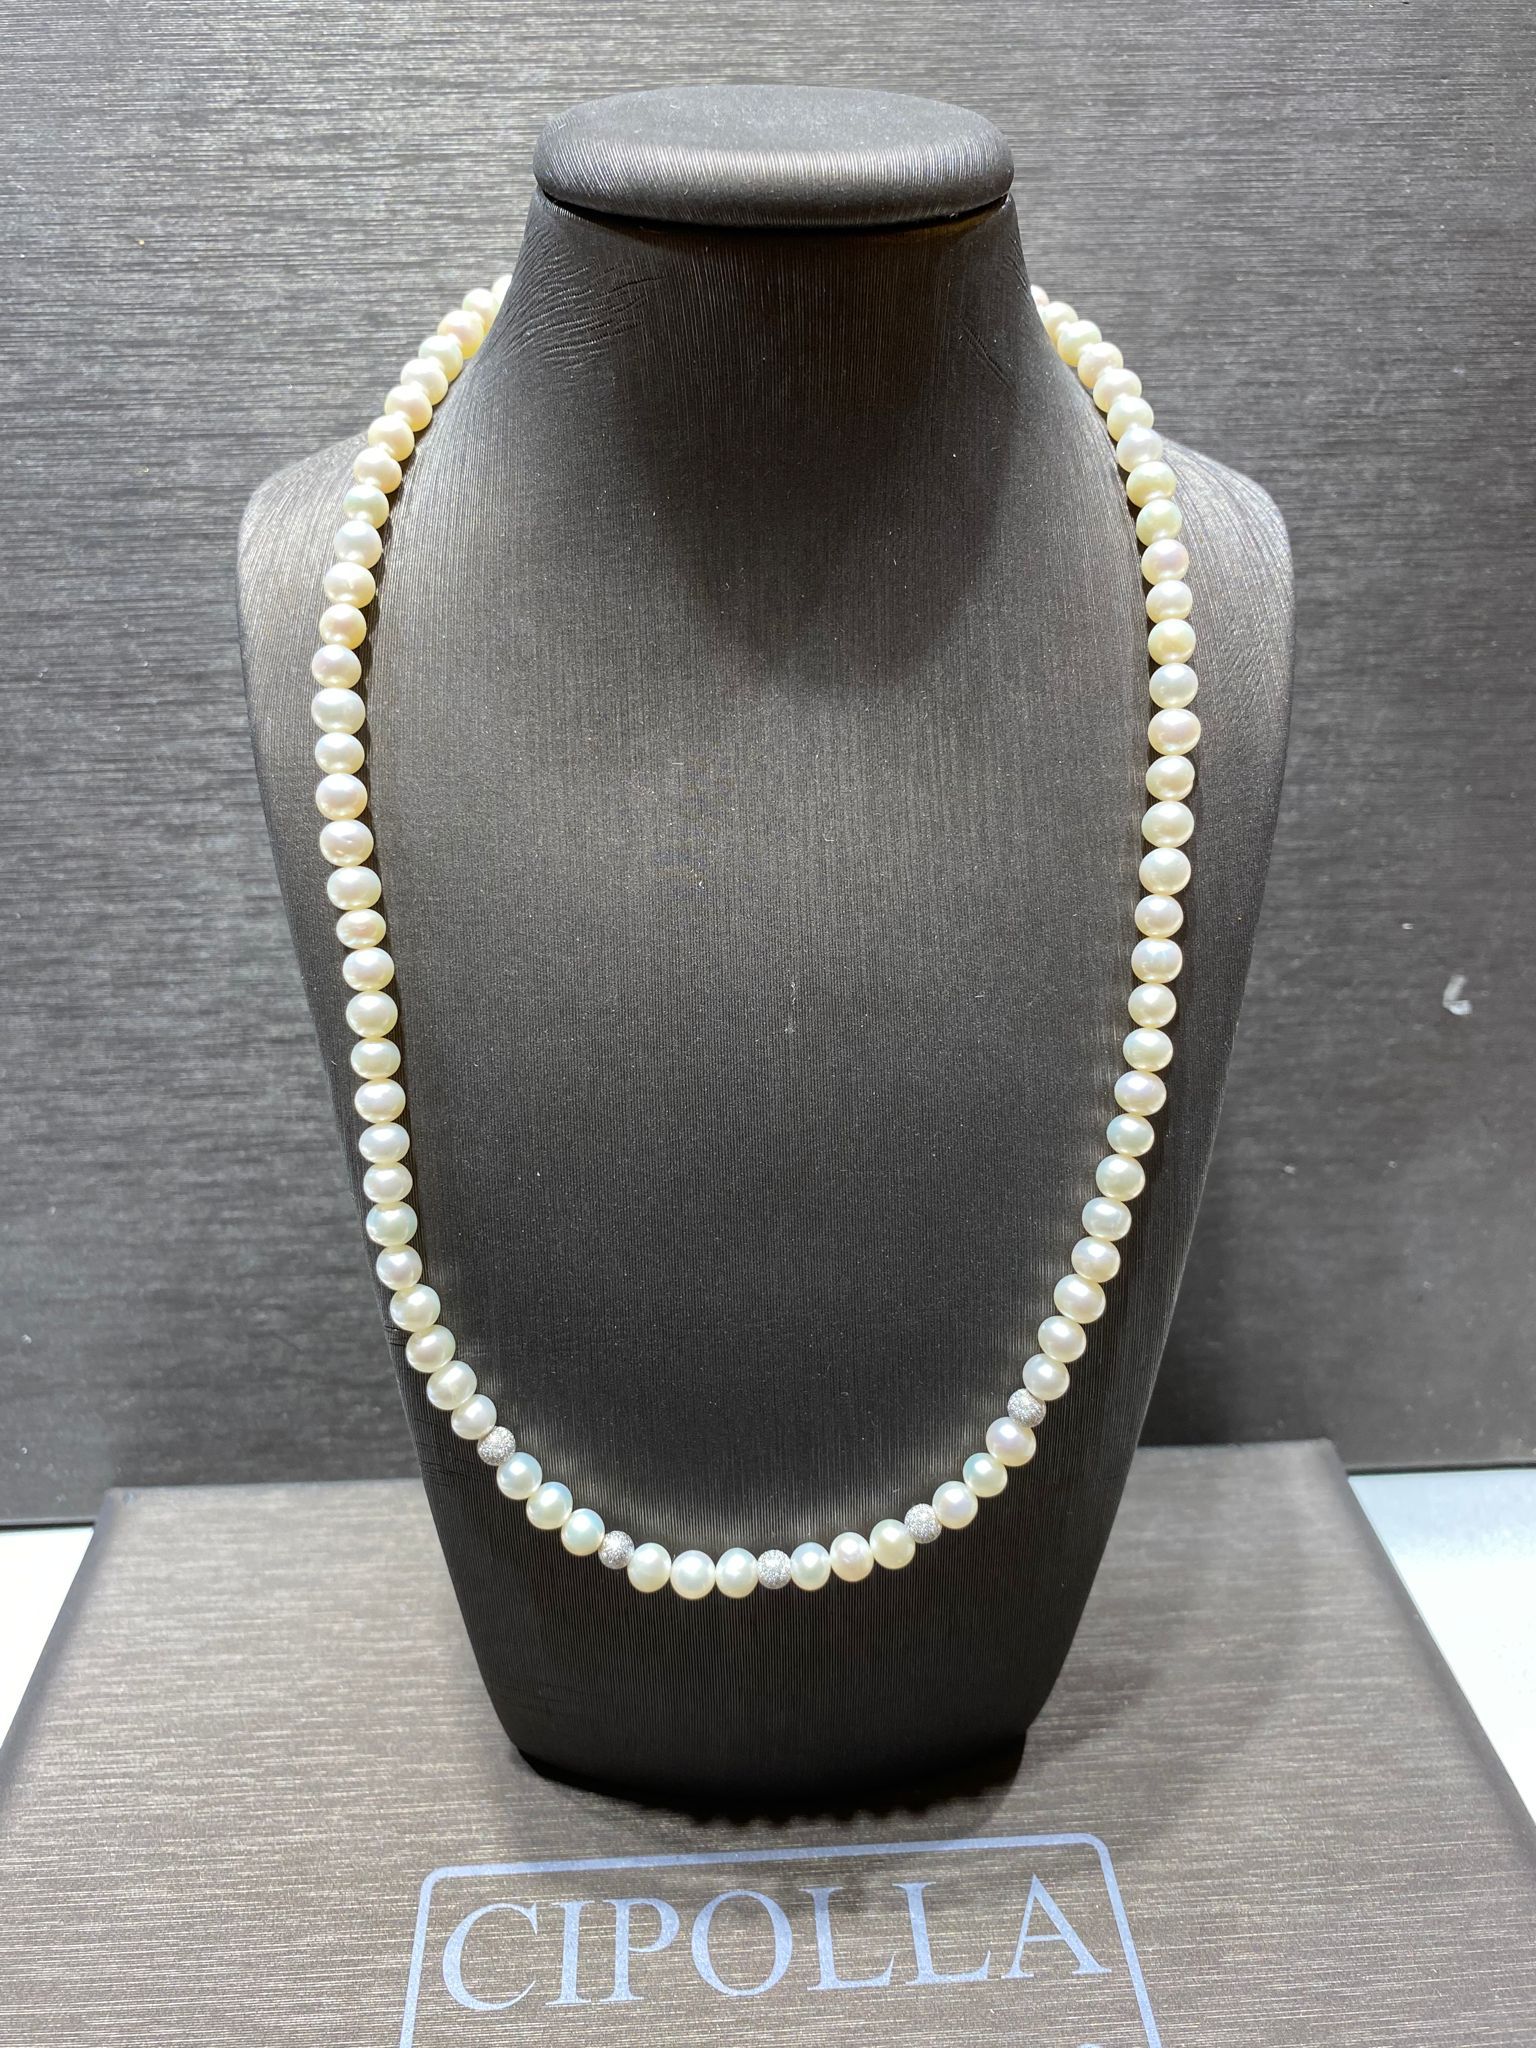 girocollo perle freshwater mm 5-5,5 chiusura oro bianco 750% sfere oro bianco 750%